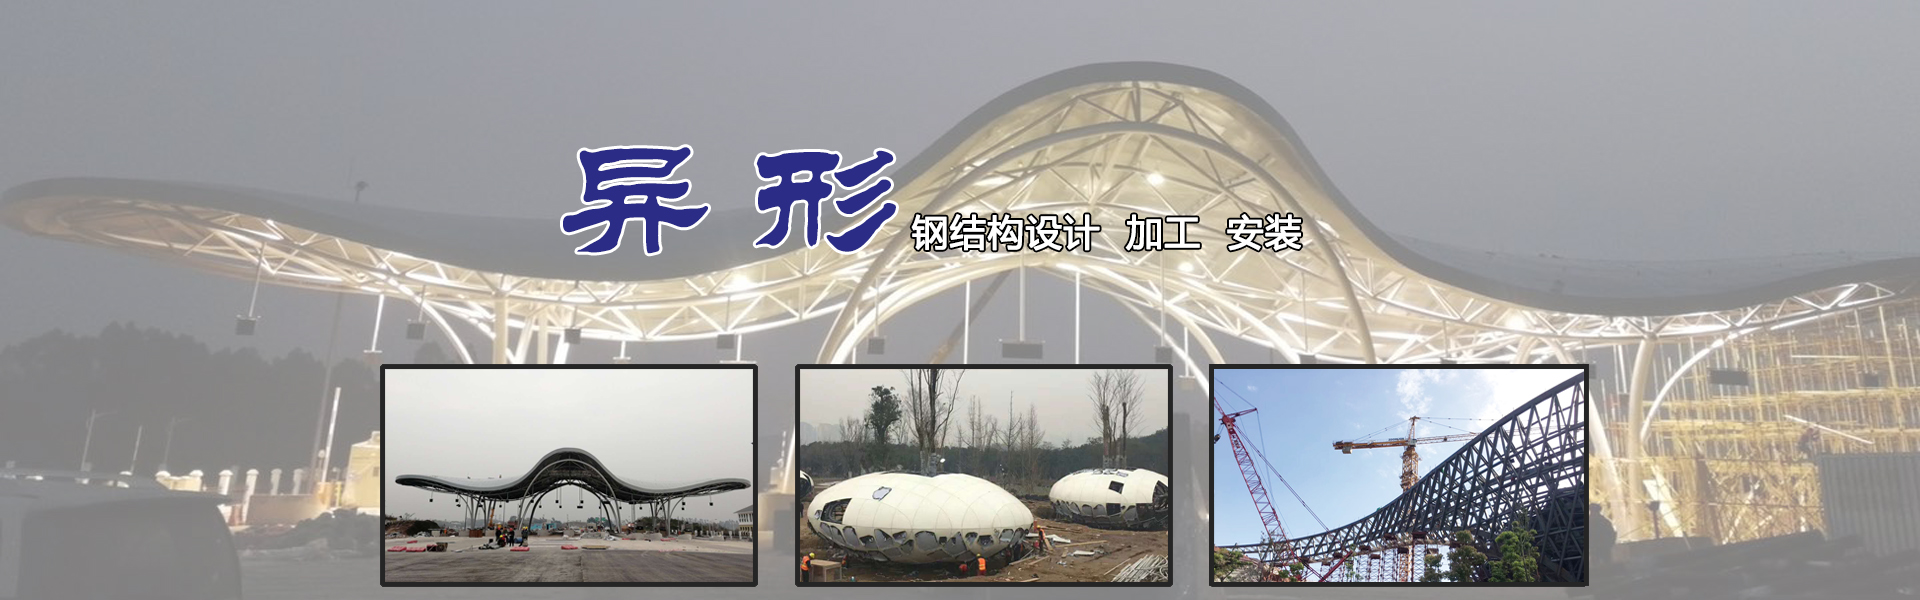 江苏胜景钢索膜结构建筑科技工程公司